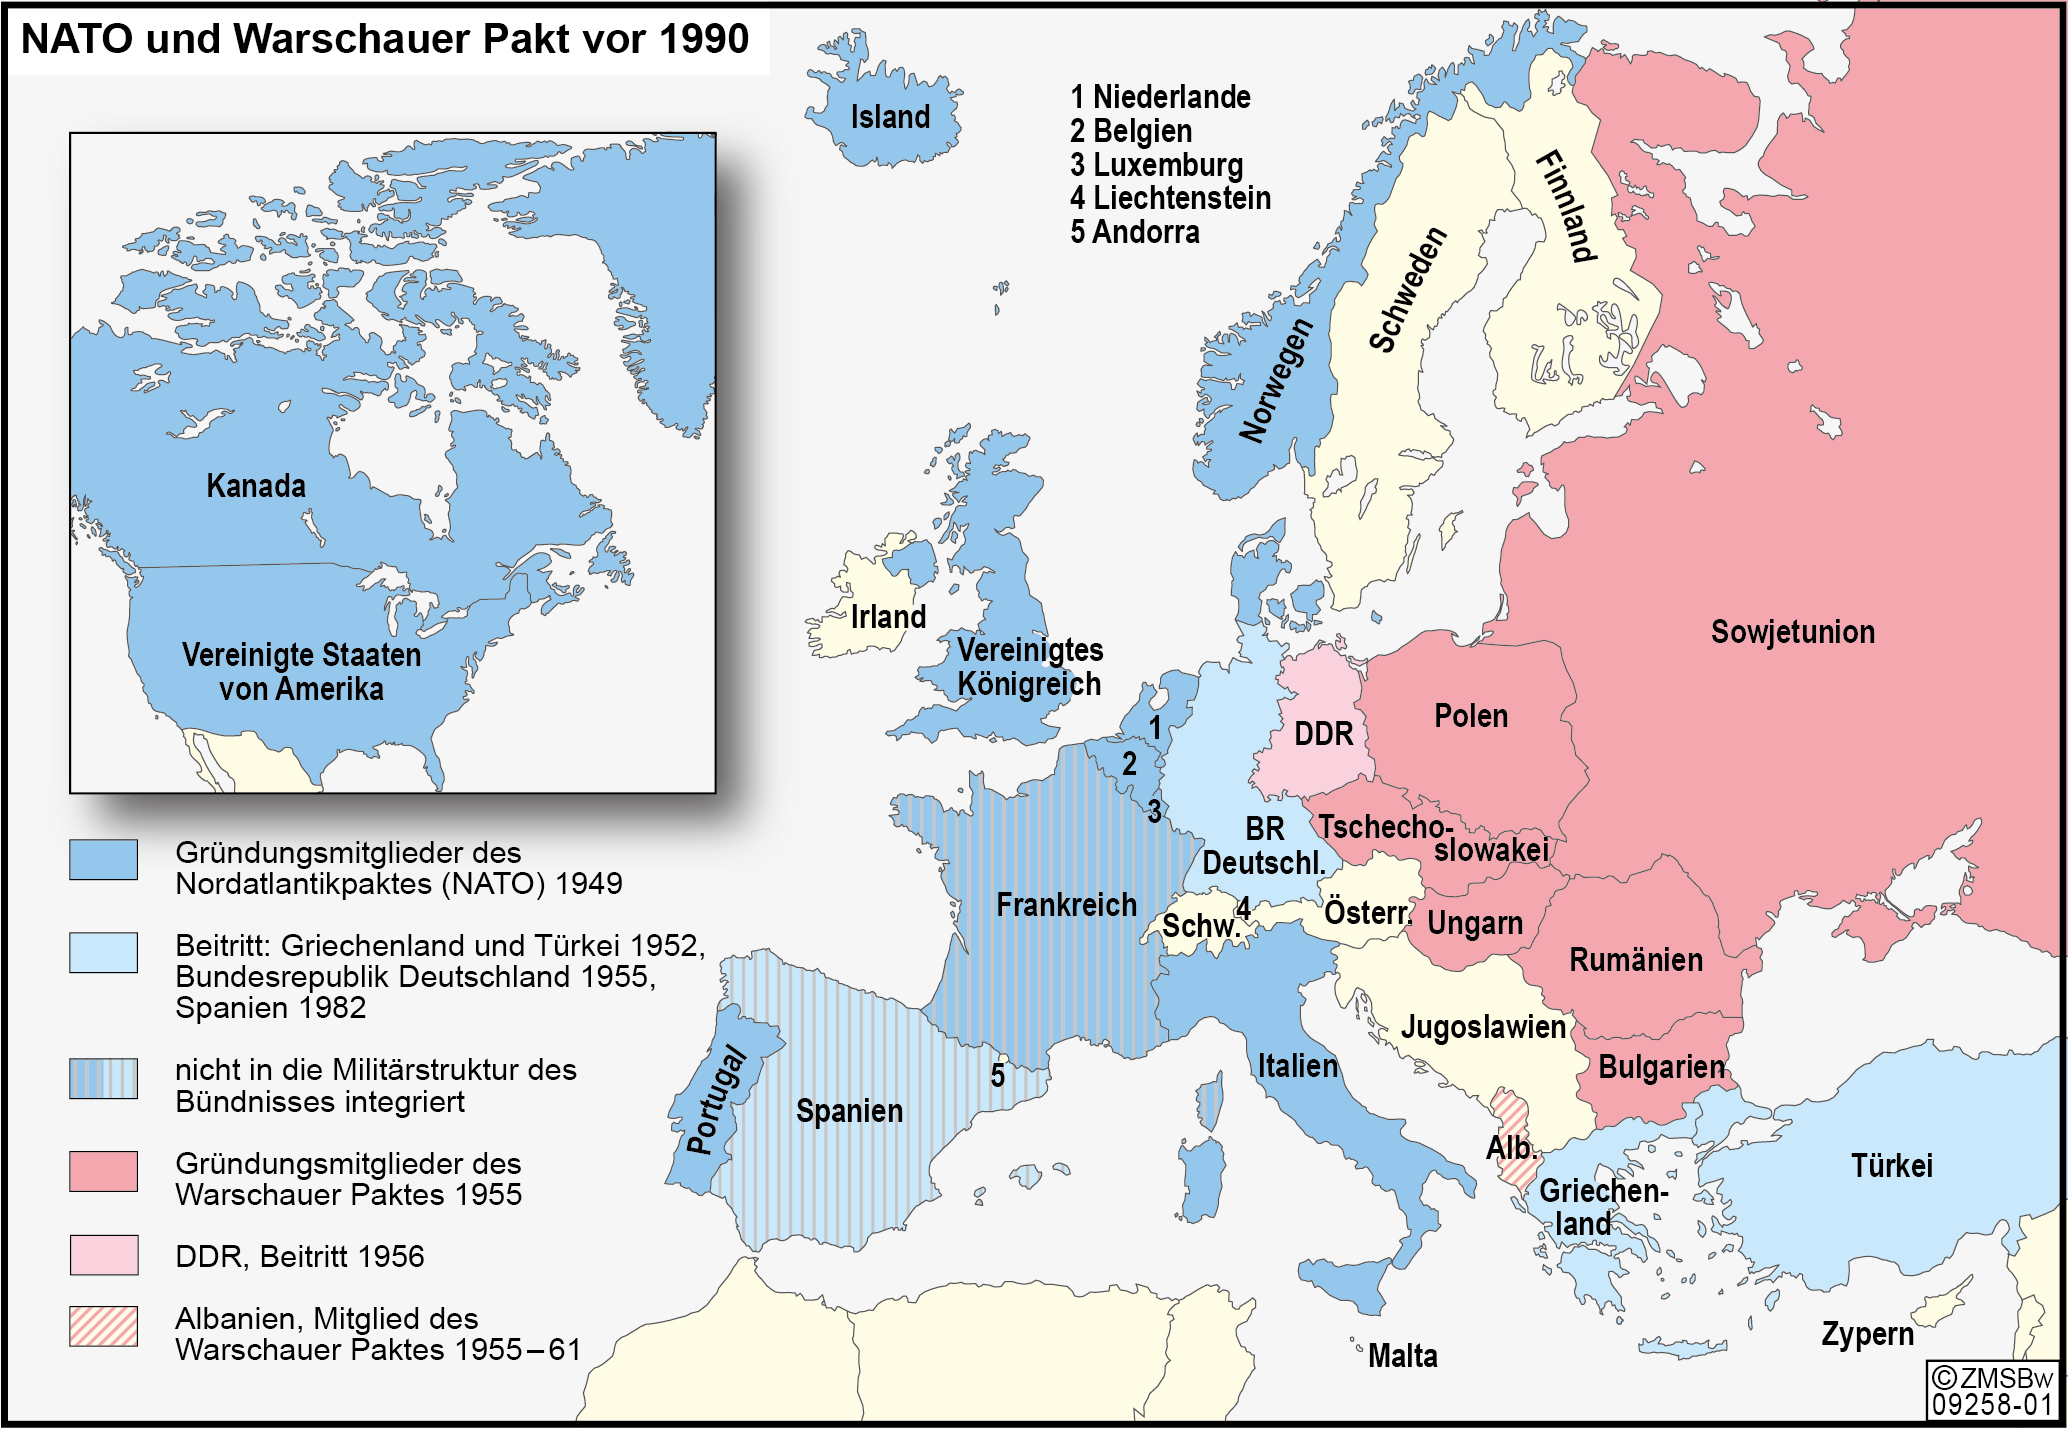 NATO und Warschauer Pakt vor 1990